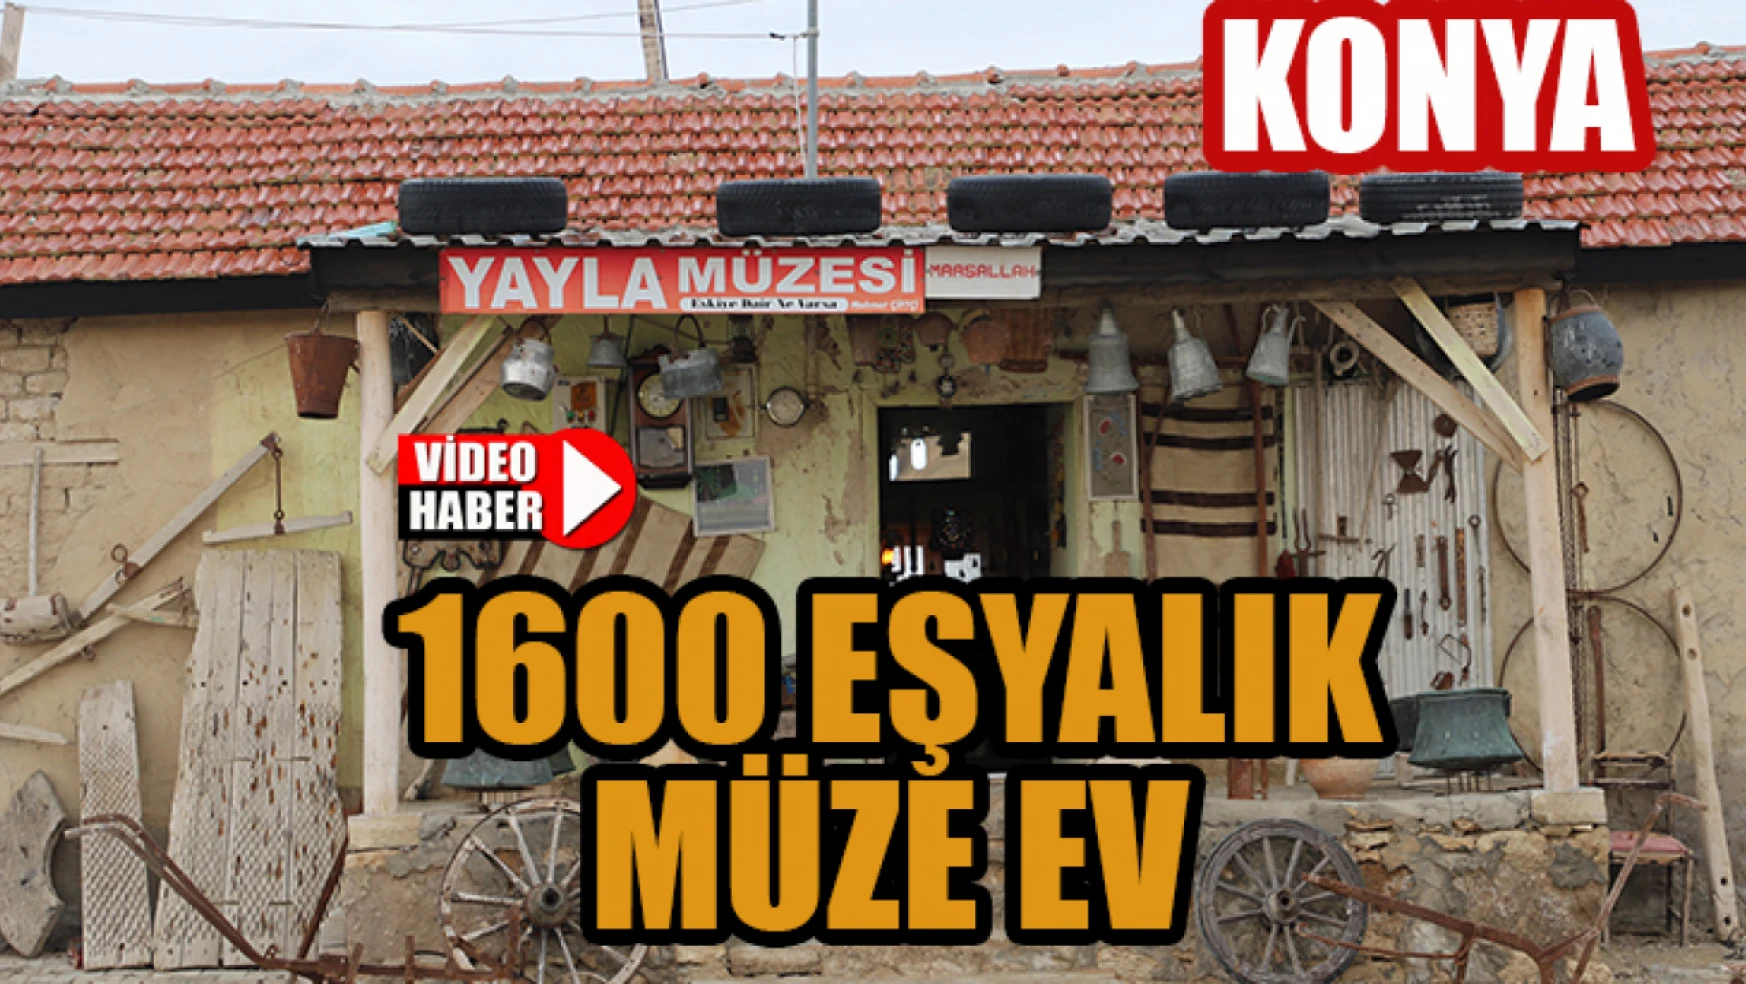 Konya'da 1600 parçalık eşyalık müze ev